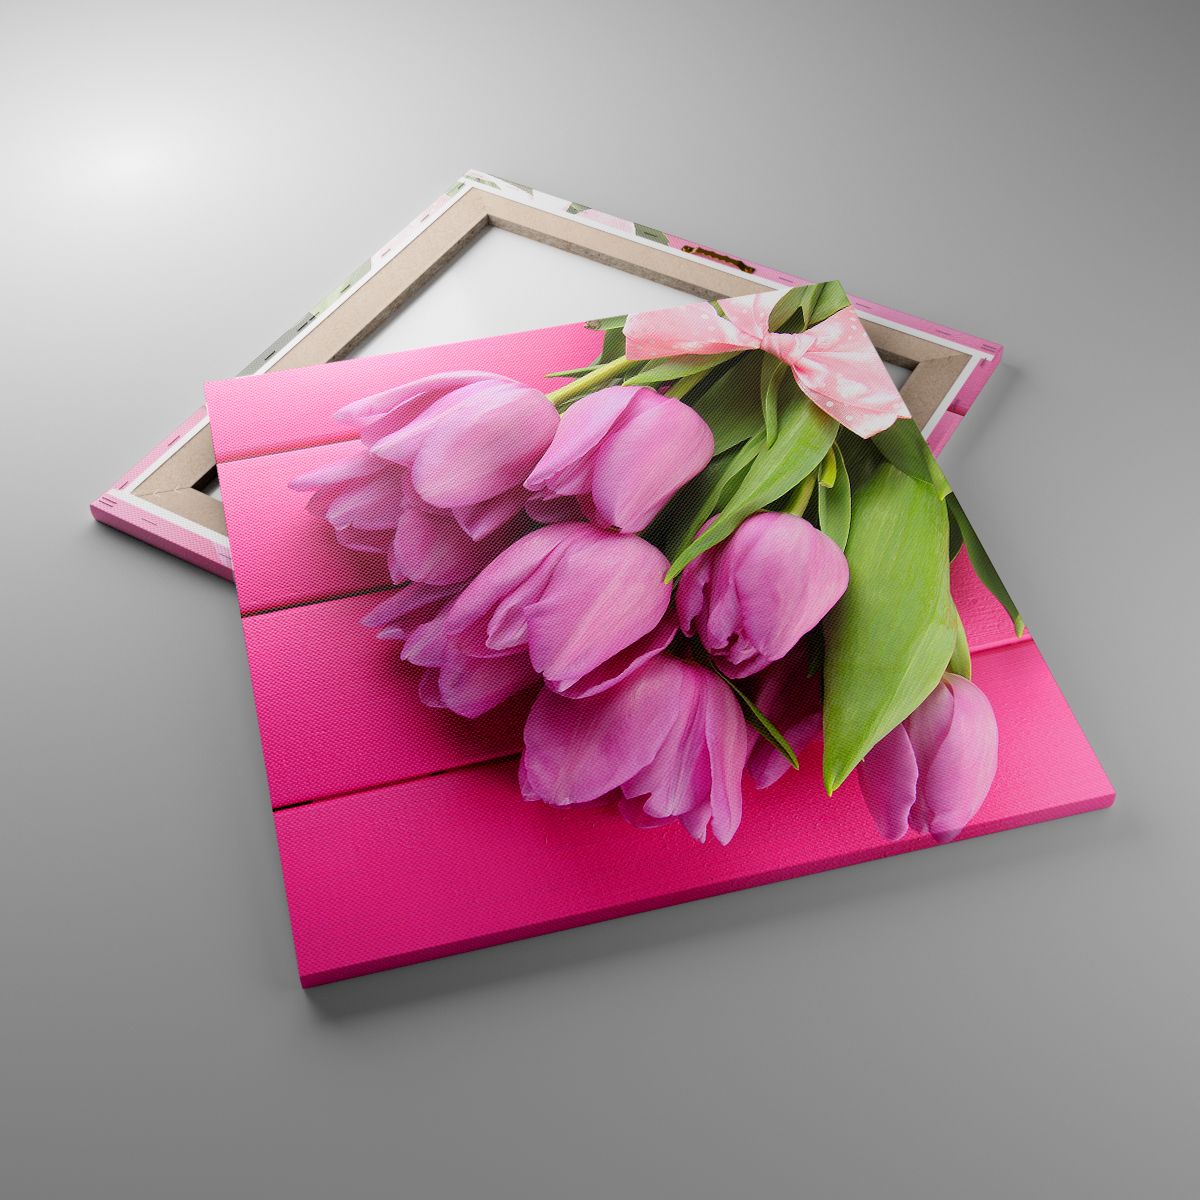 Obrazy Kwiaty, Obrazy Tulipany, Obrazy Bukiet Kwiatów, Obrazy Różowe Kwiaty, Obrazy Kwiaciarnia